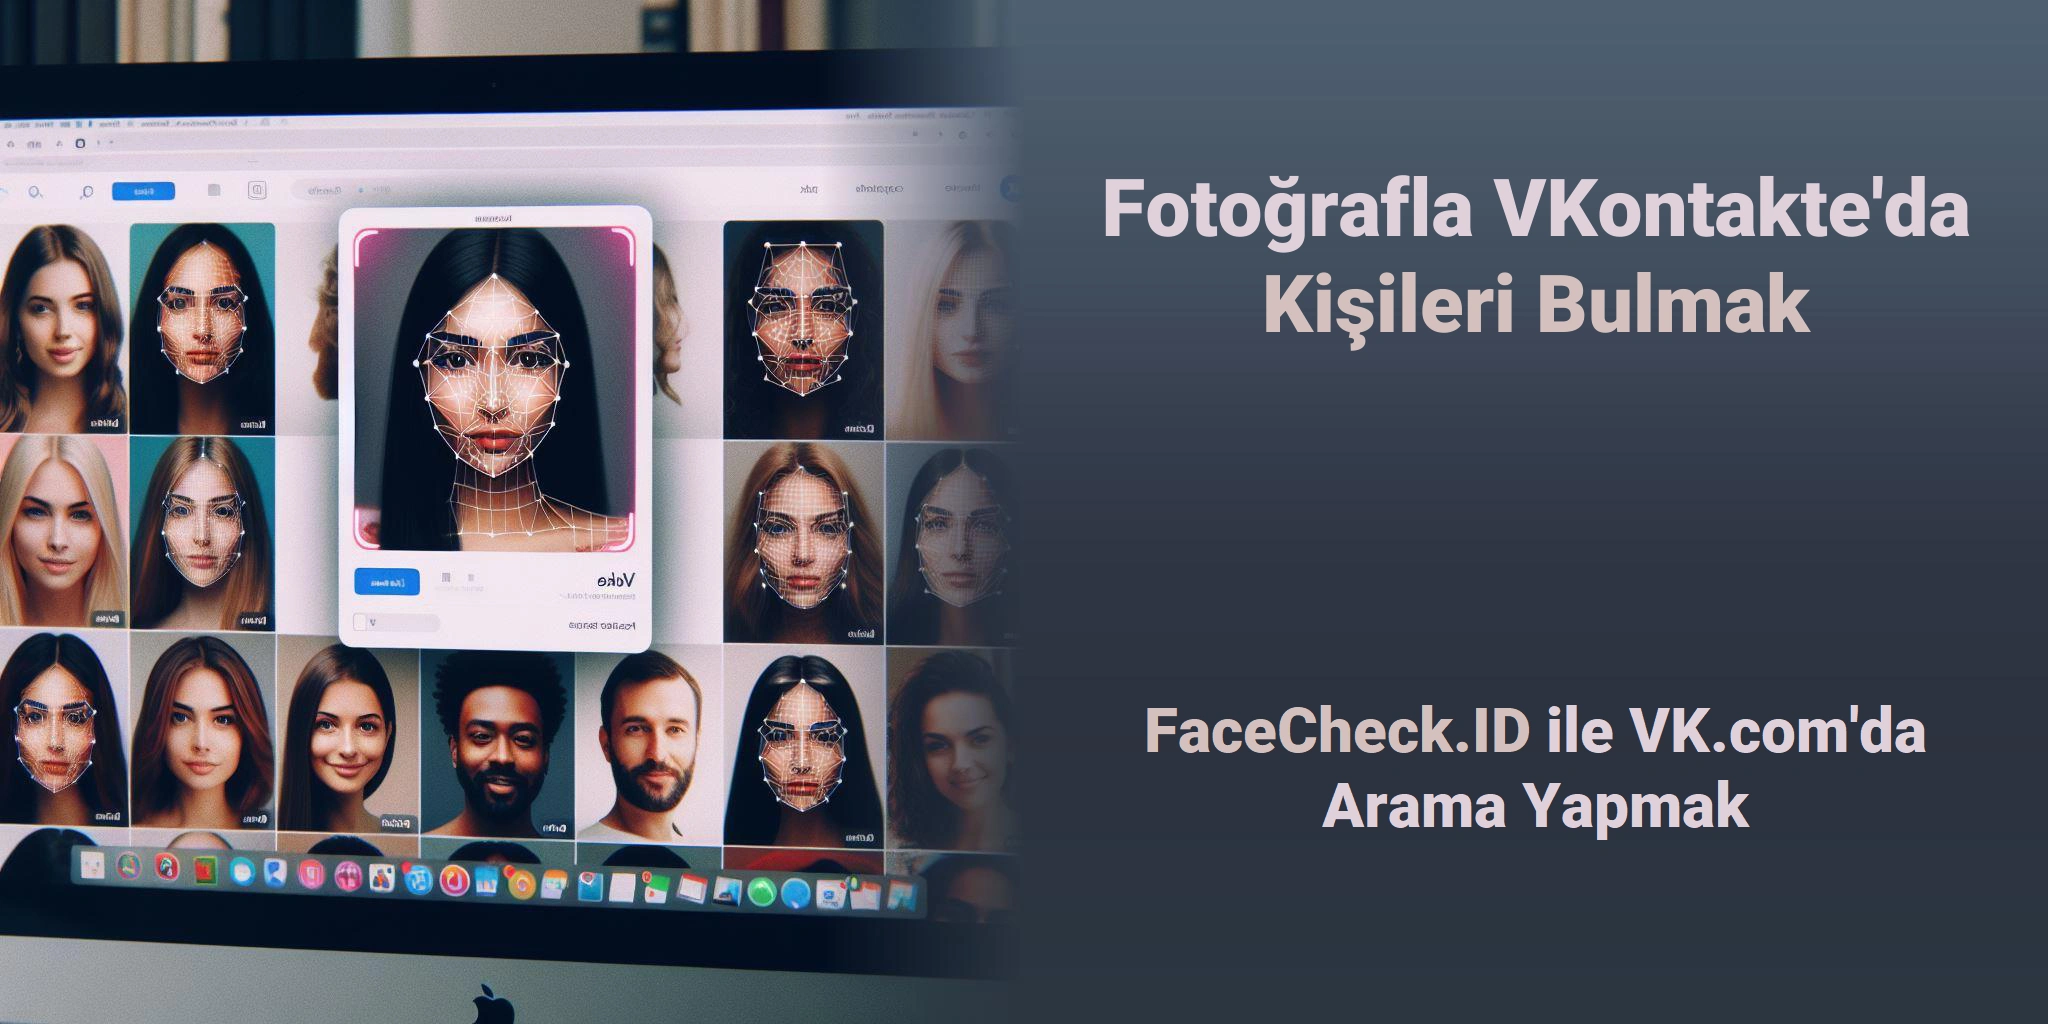 Fotoğrafla VKontakte'da Kişileri Bulmak FaceCheck.ID ile VK.com'da Arama Yapmak